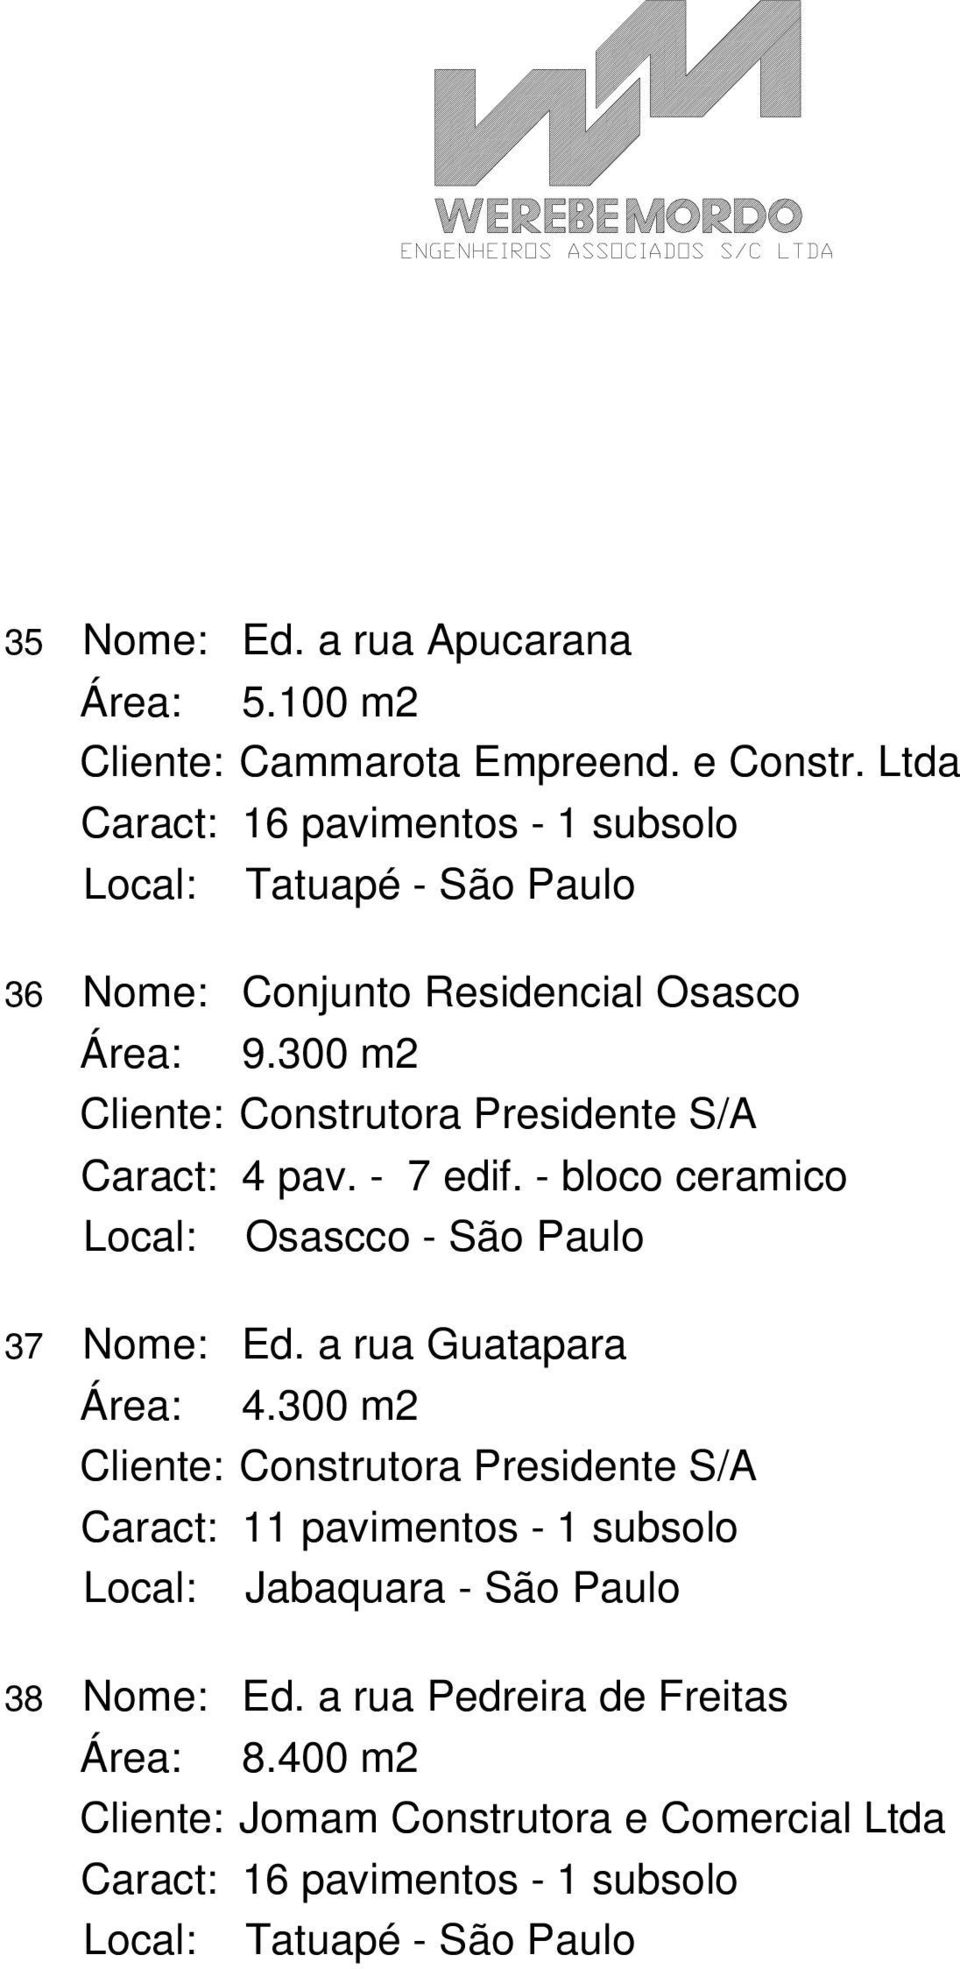 300 m2 Cliente: Construtora Presidente S/A Caract: 4 pav. - 7 edif. - bloco ceramico Local: Osascco - São Paulo 37 Nome: Ed. a rua Guatapara Área: 4.